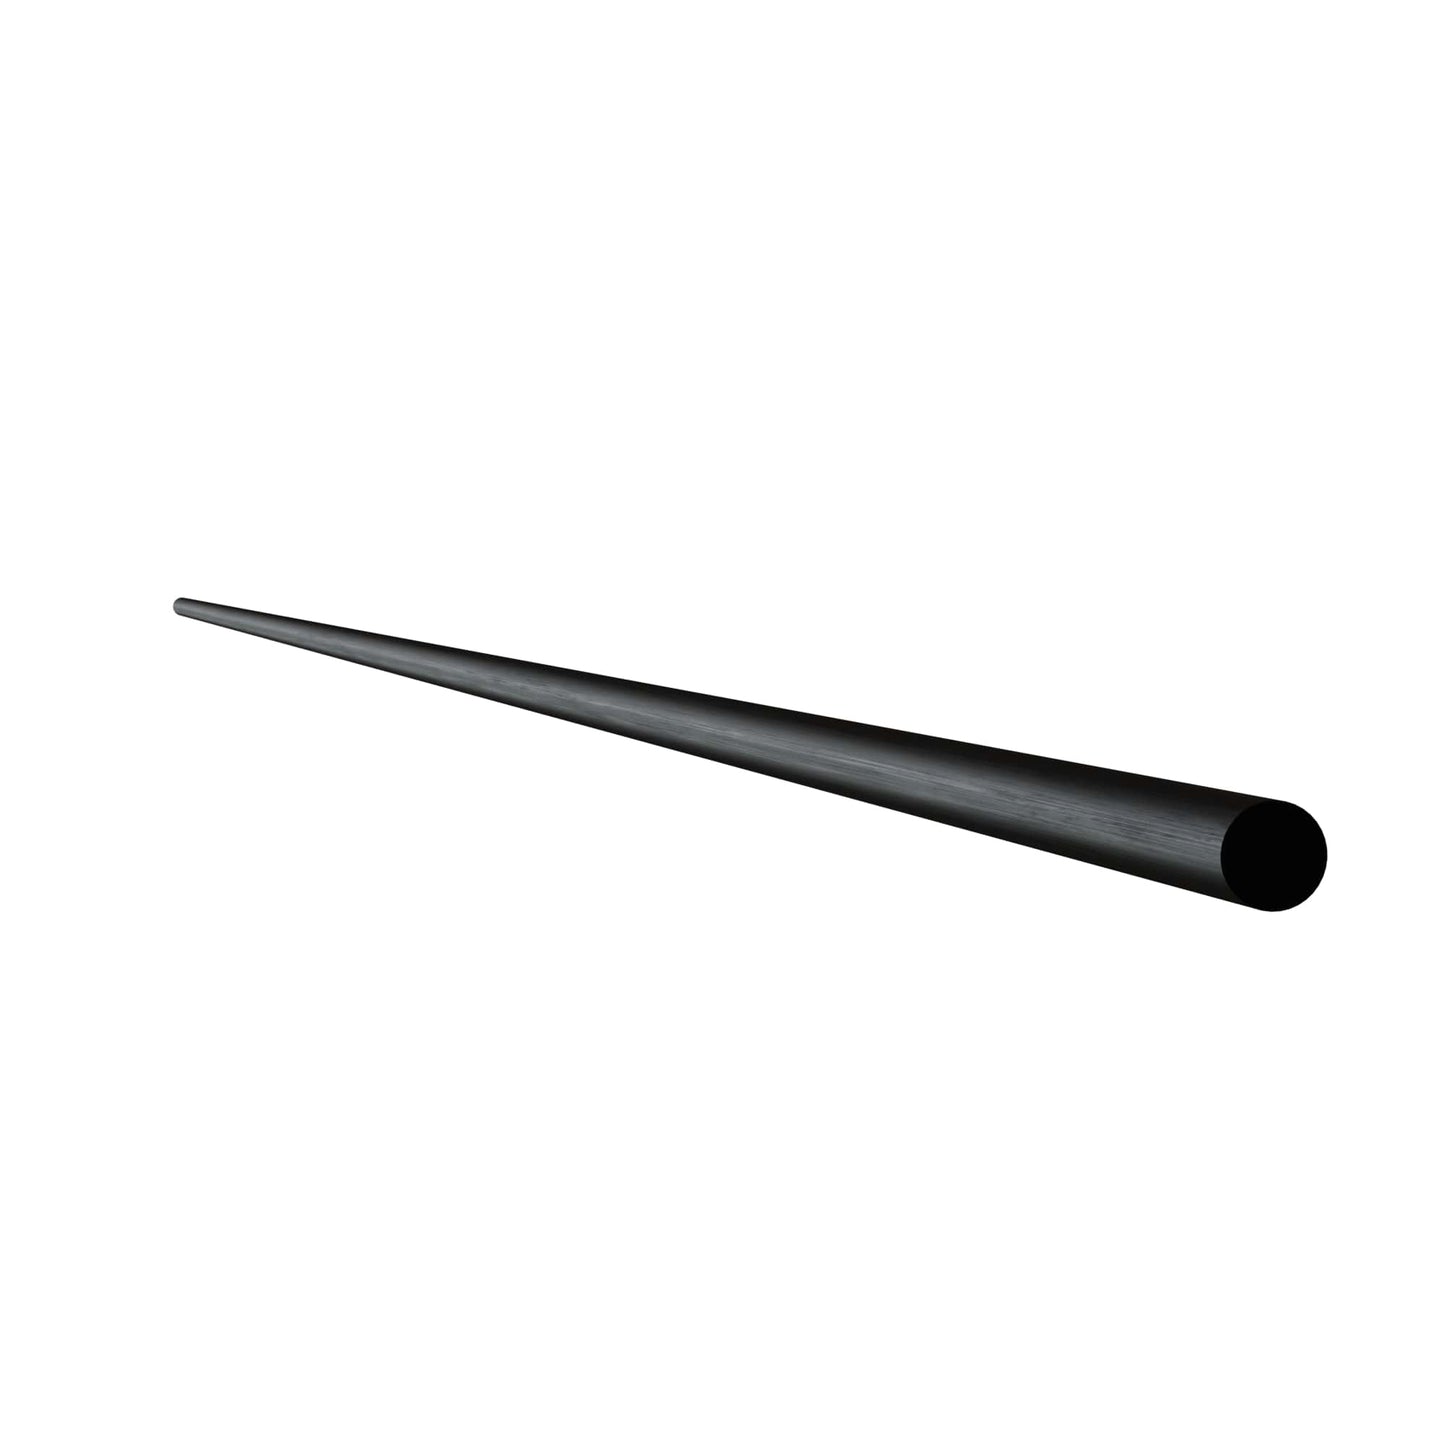 Gallery Rail Rod, Flat Black, 6mm x 36" L alt 0